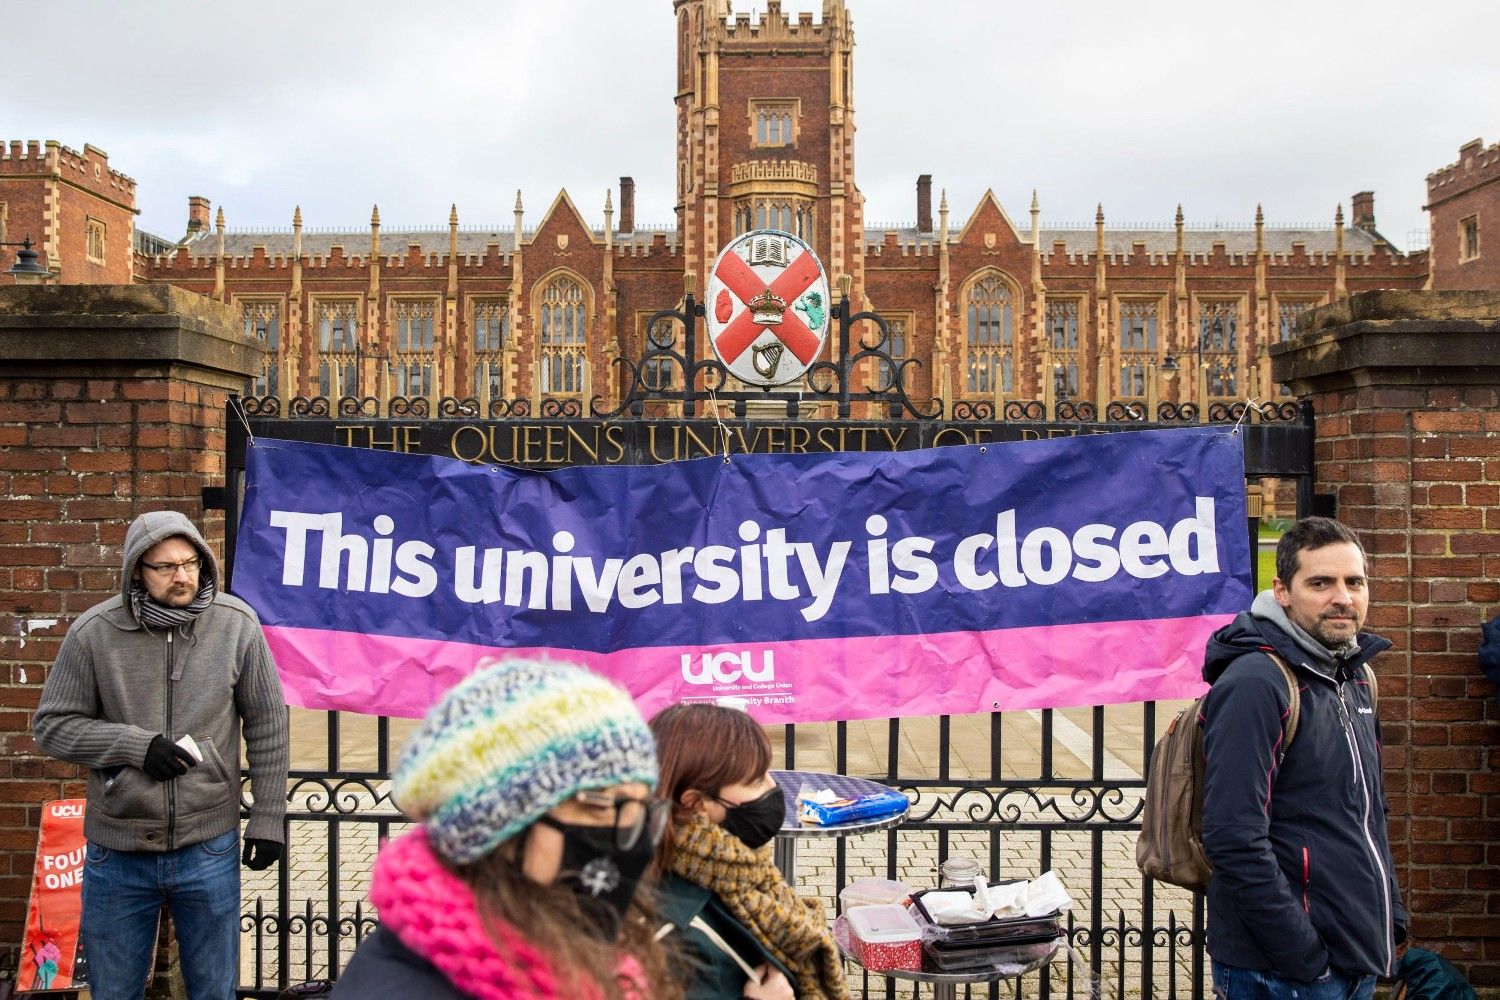  17ήμερη απεργία σε 150 πανεπιστήμια του Ηνωμένου Βασιλείου